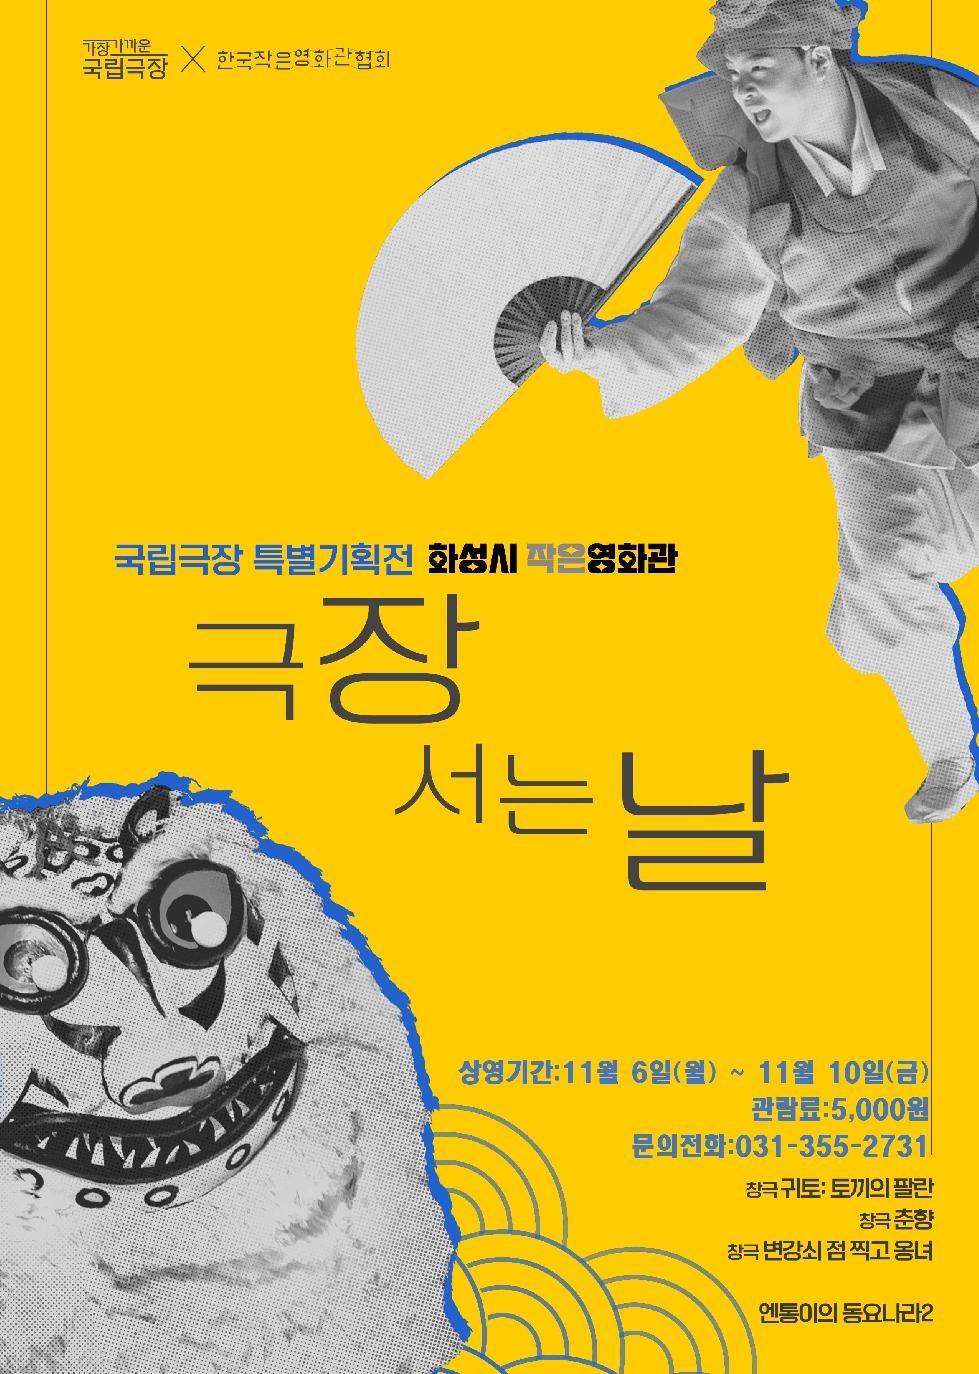 화성시 작은영화관,국립극장 기획전‘극장 서는 날’개최